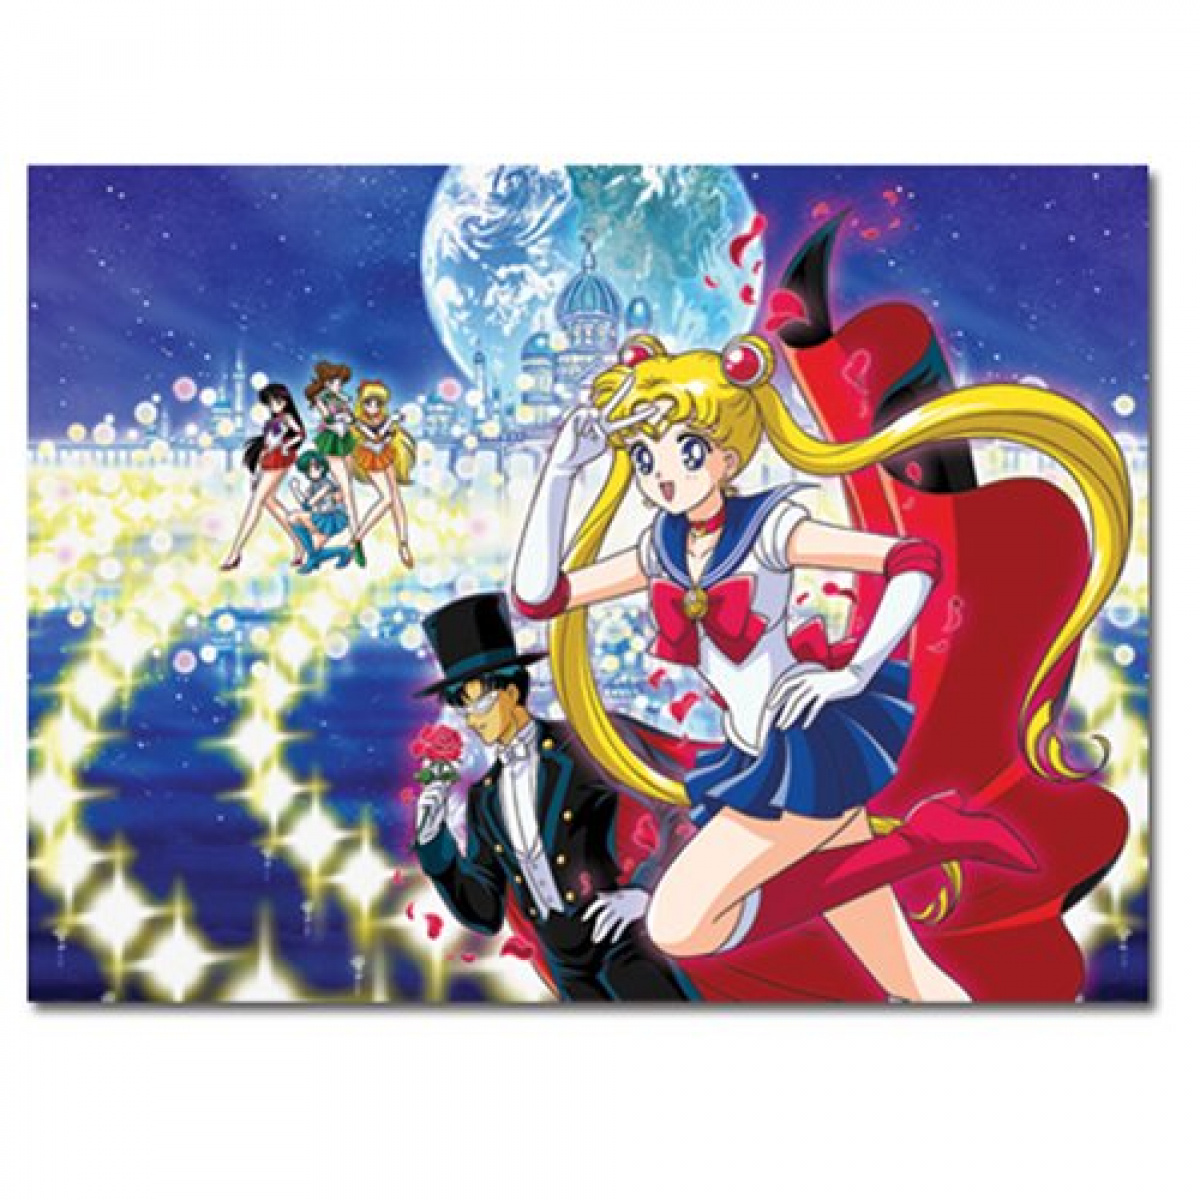 Sailor Moon Group 1,000-Piece Puzzle